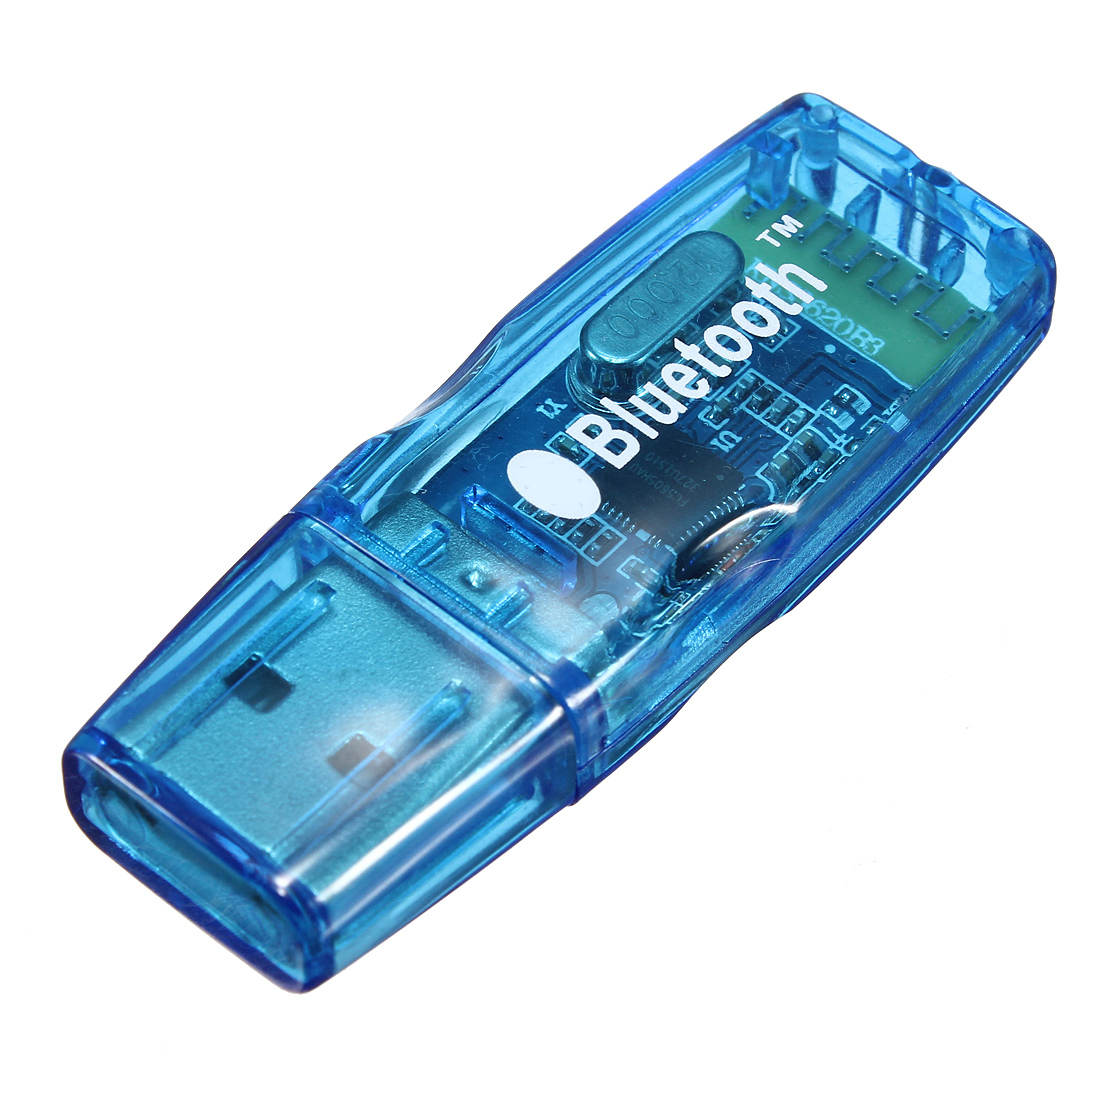 Купить bluetooth флешку. Bluetooth адаптер Dongle USB 2.0. Avalanche Bluetooth адаптер. Мини USB Bluetooth адаптер v 2,0. Bluetooth адаптер neodrive Bluetooth 2.0.